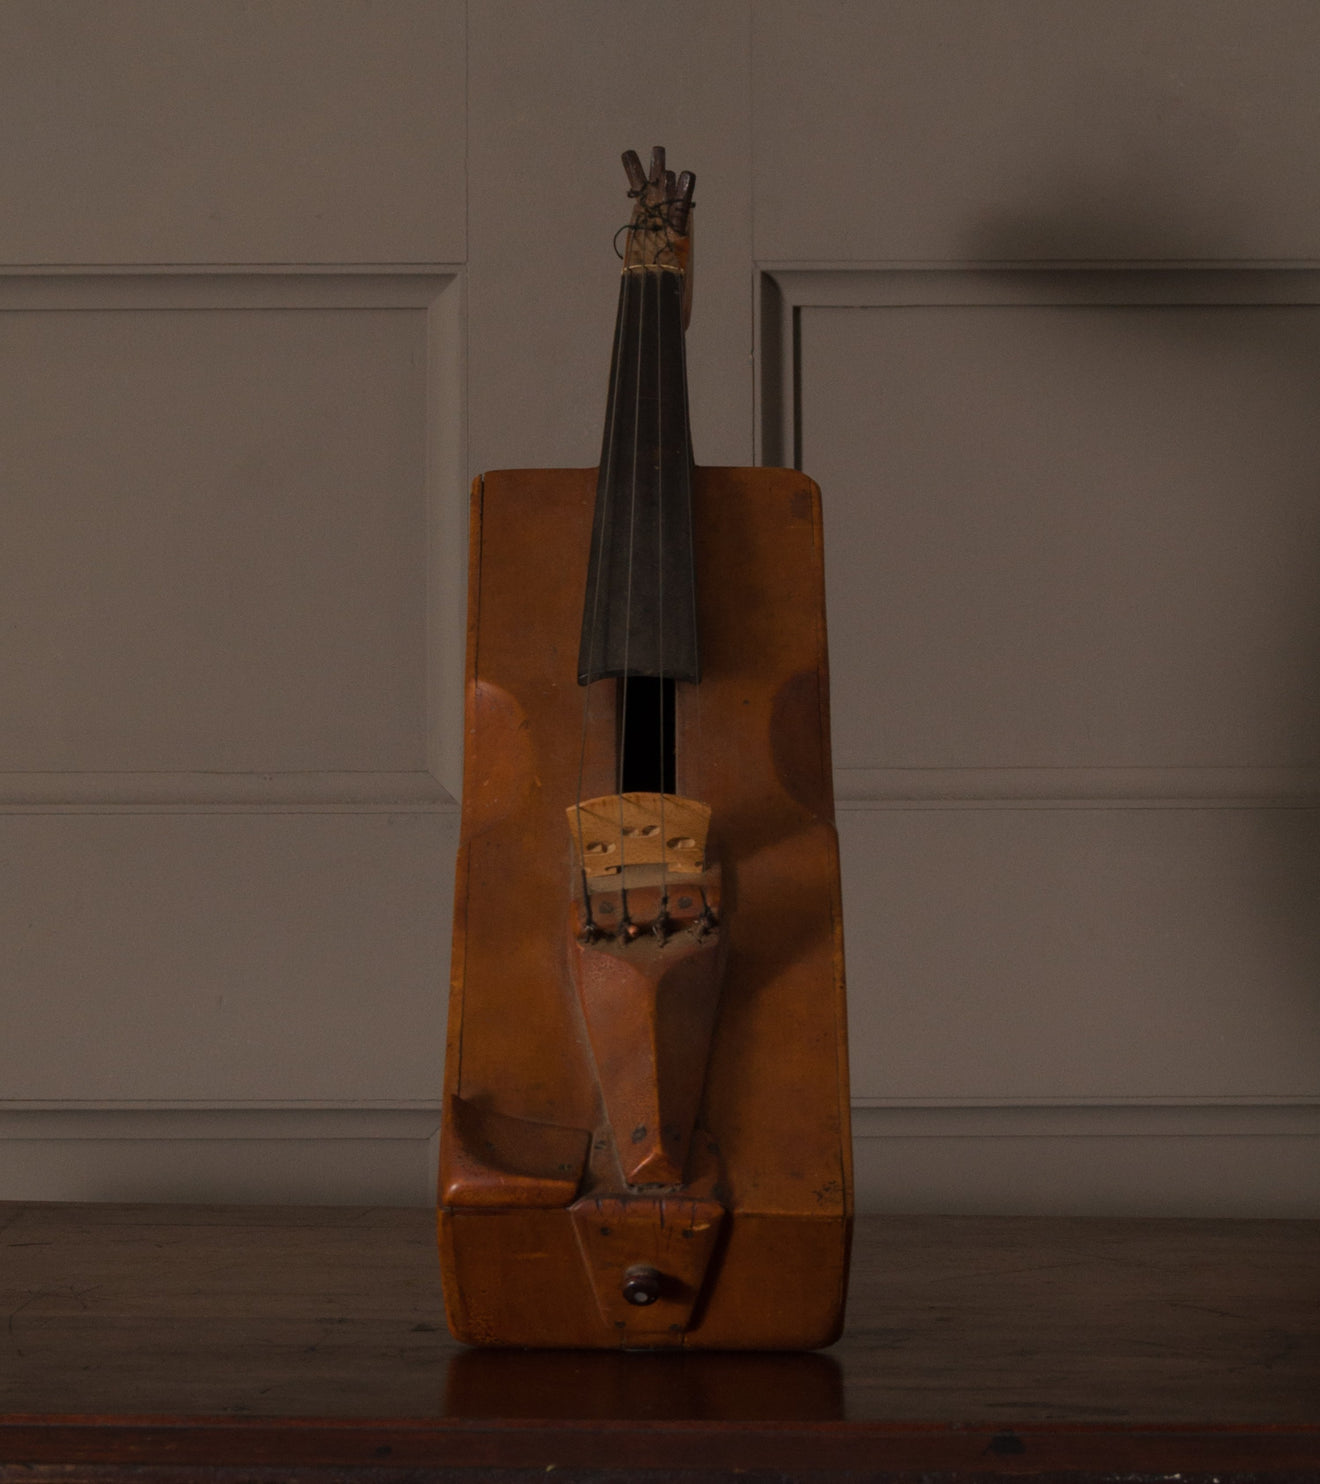 Unique Violin-Like Instrument